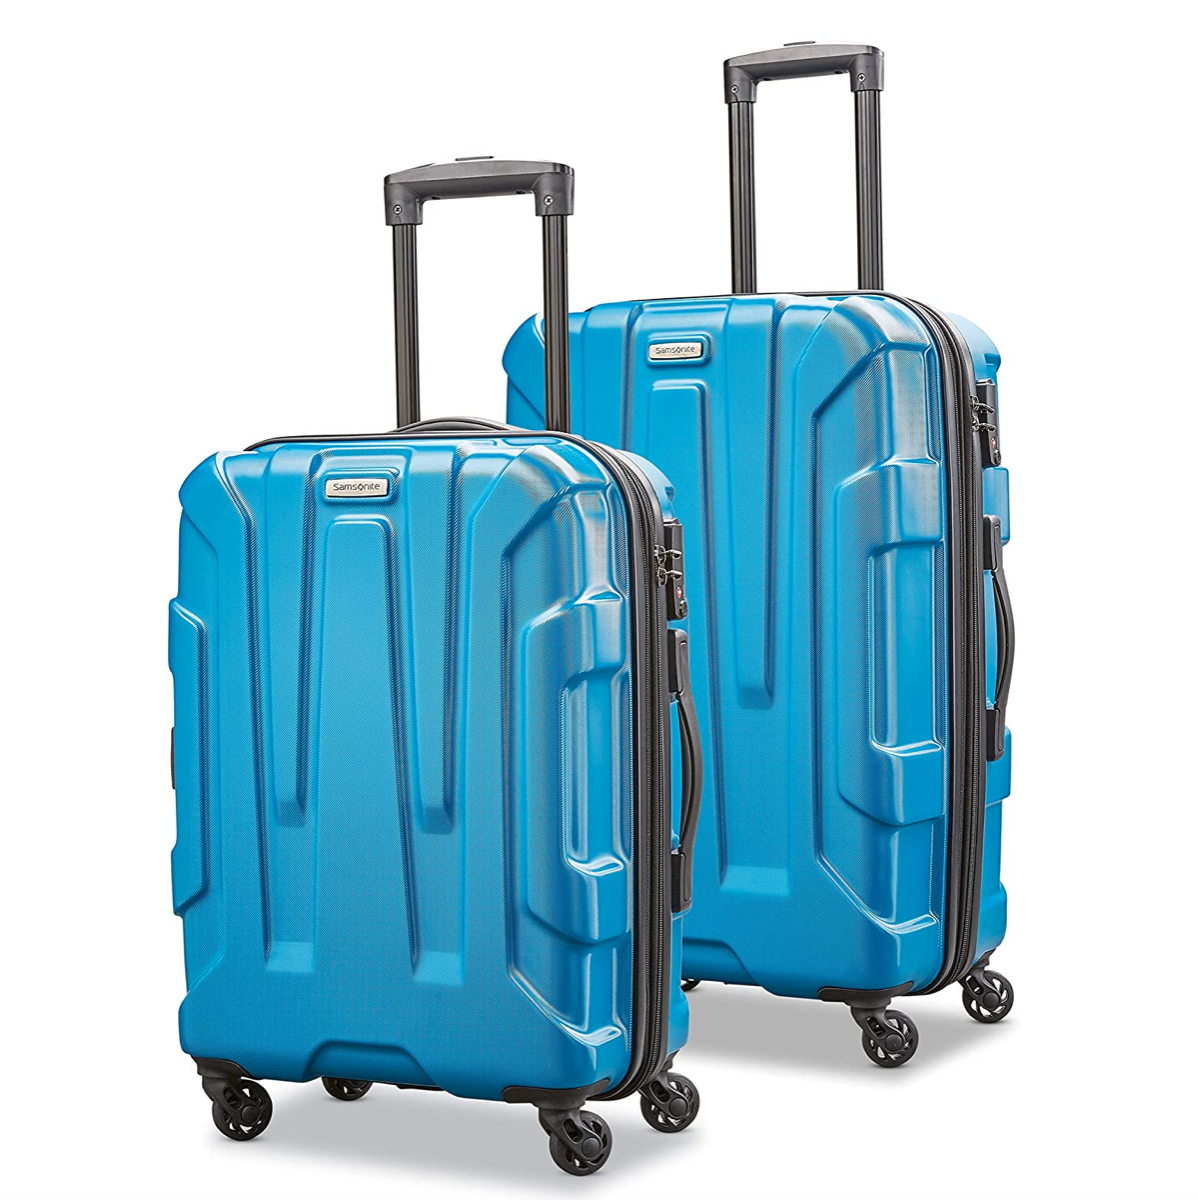 Samsonite Centric Hardside Expandable Luggage 